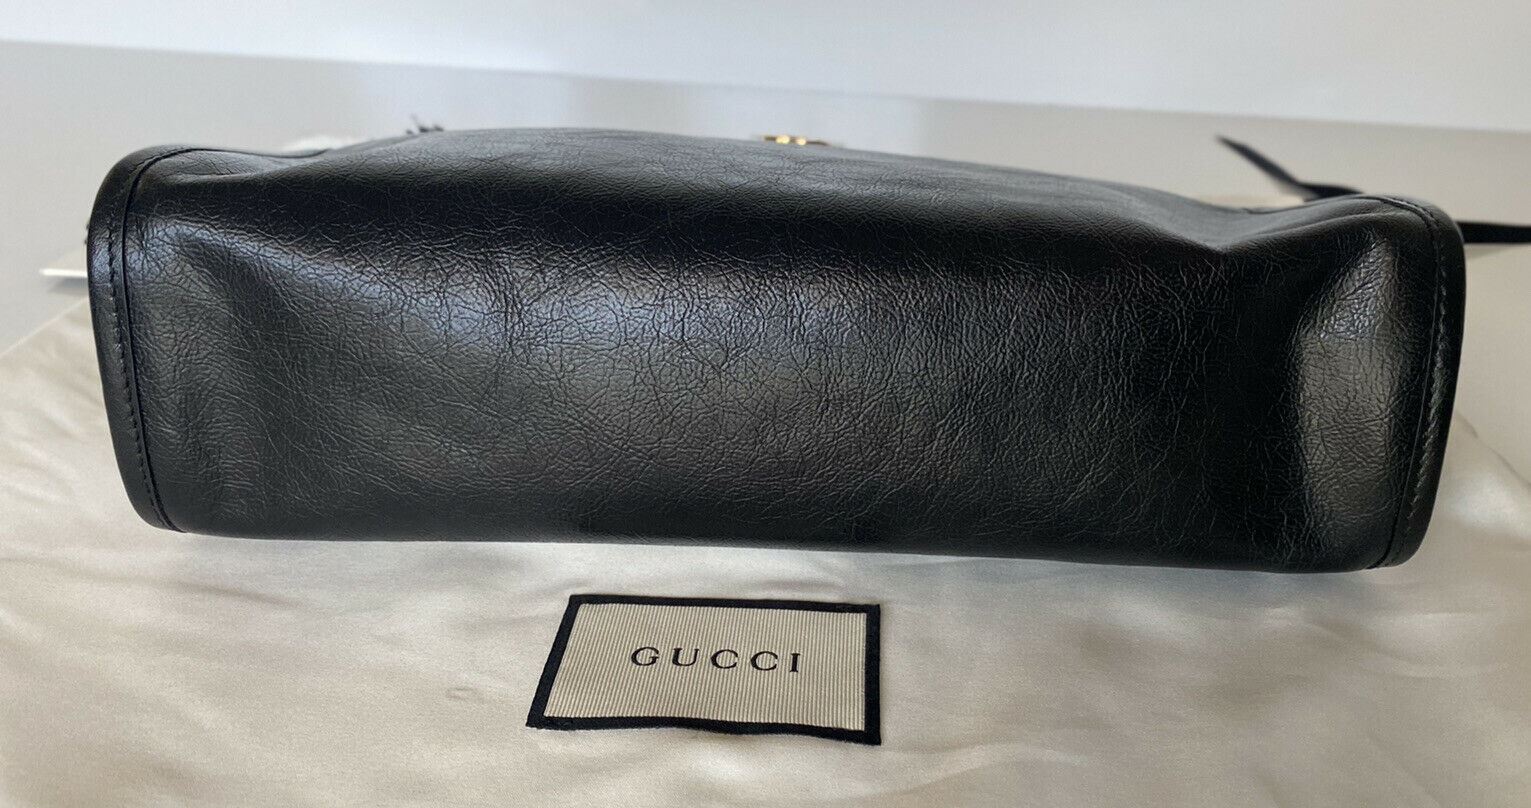 Neu mit Etikett: Gucci Morpheus Kosmetiketui, Gucci Code Embossed Pouch, schwarzes Leder 575991 